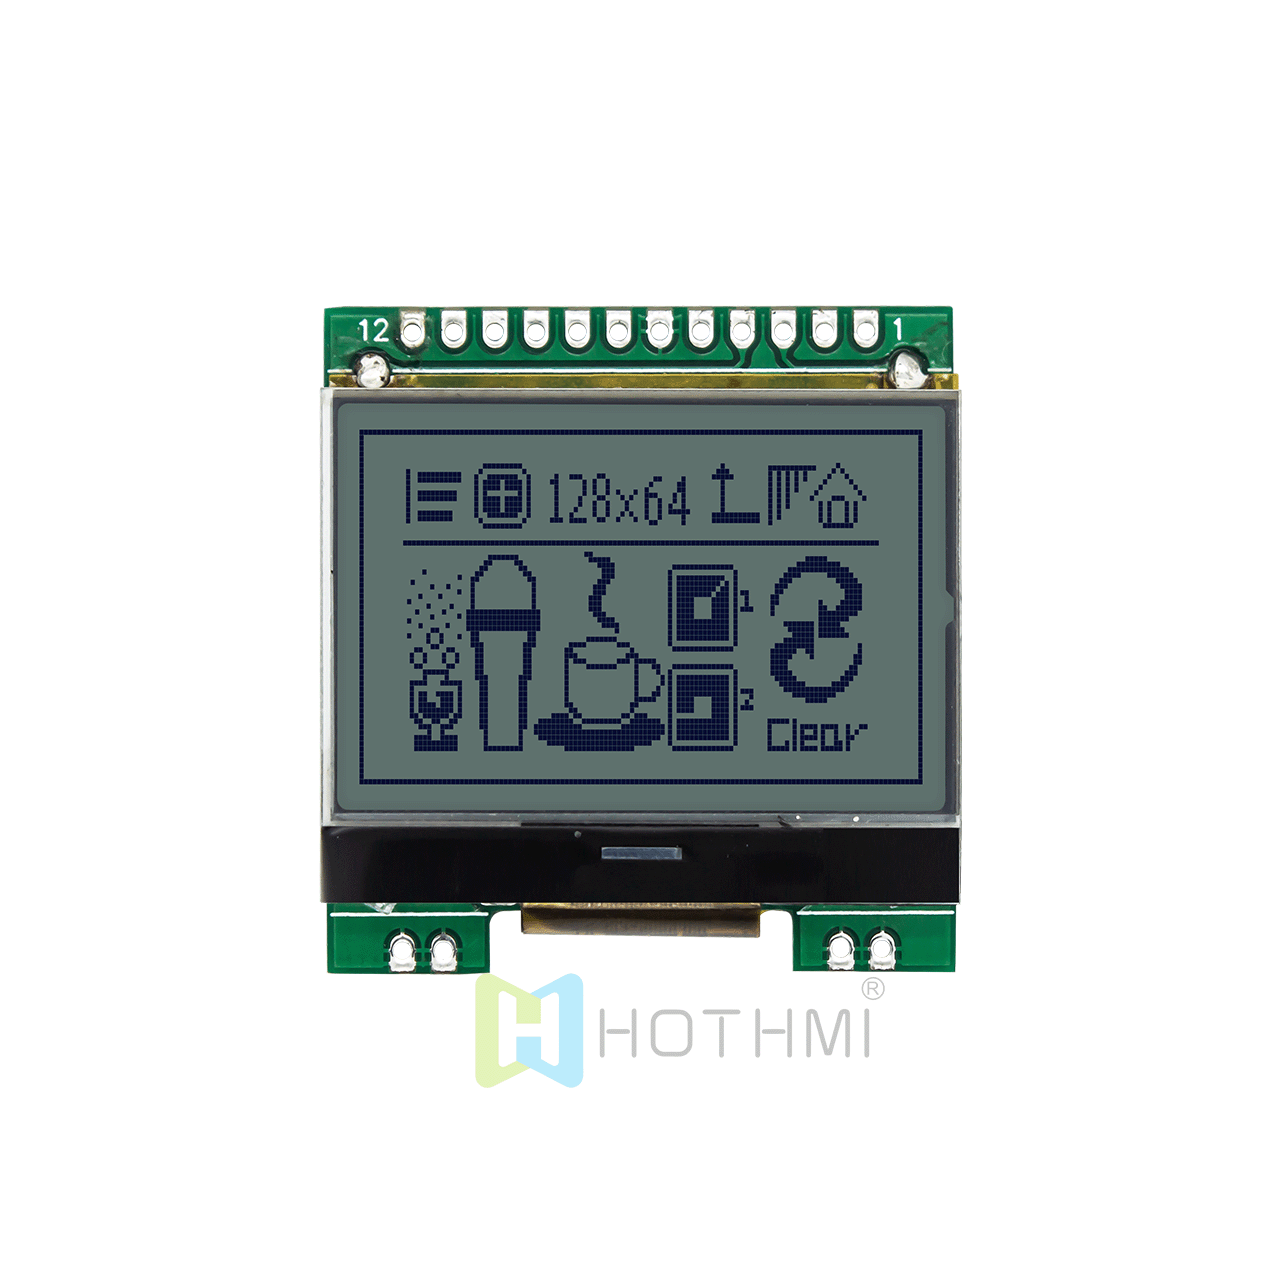 图形LCD12864/128x64 黄绿背光图形模组/图形COB模块/1.7寸图形液晶显示屏/ST7567控制器/SPI